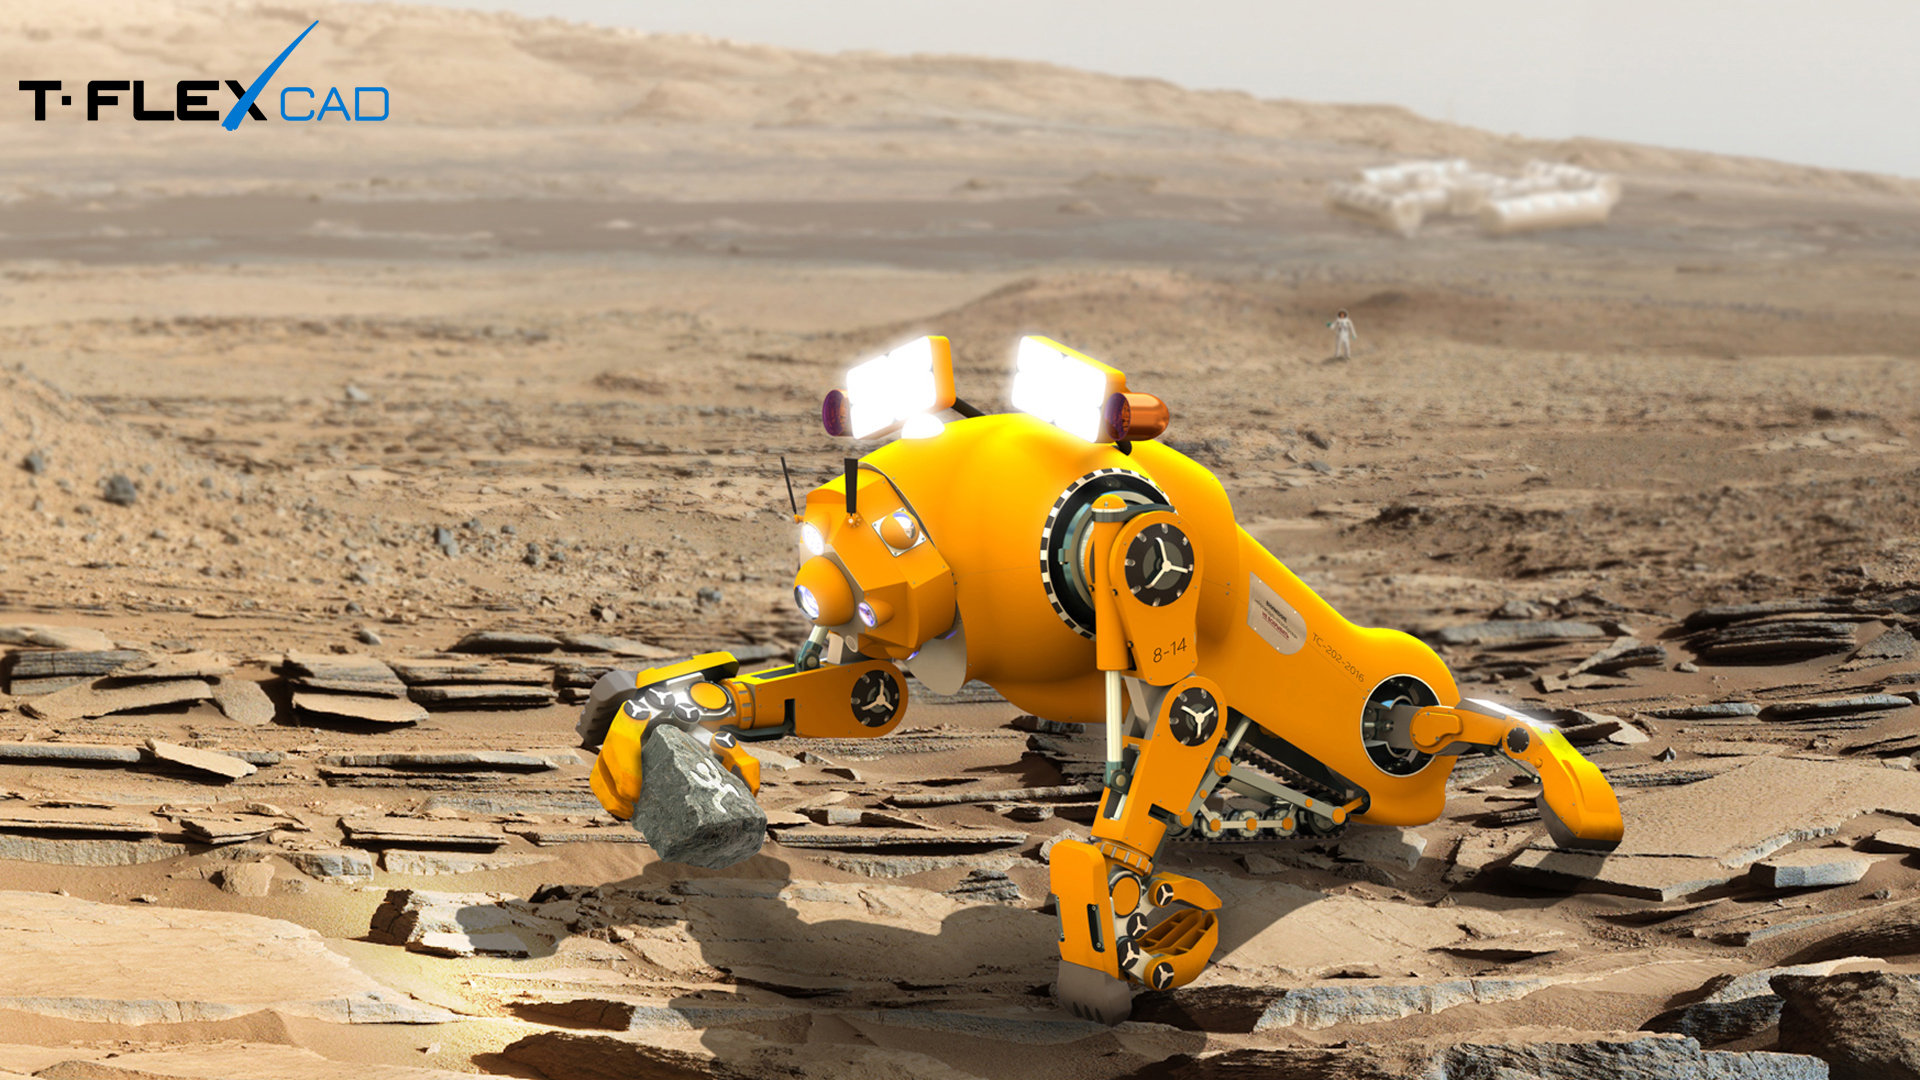 Фотореализм в T-FLEX CAD - Робот на Марсе